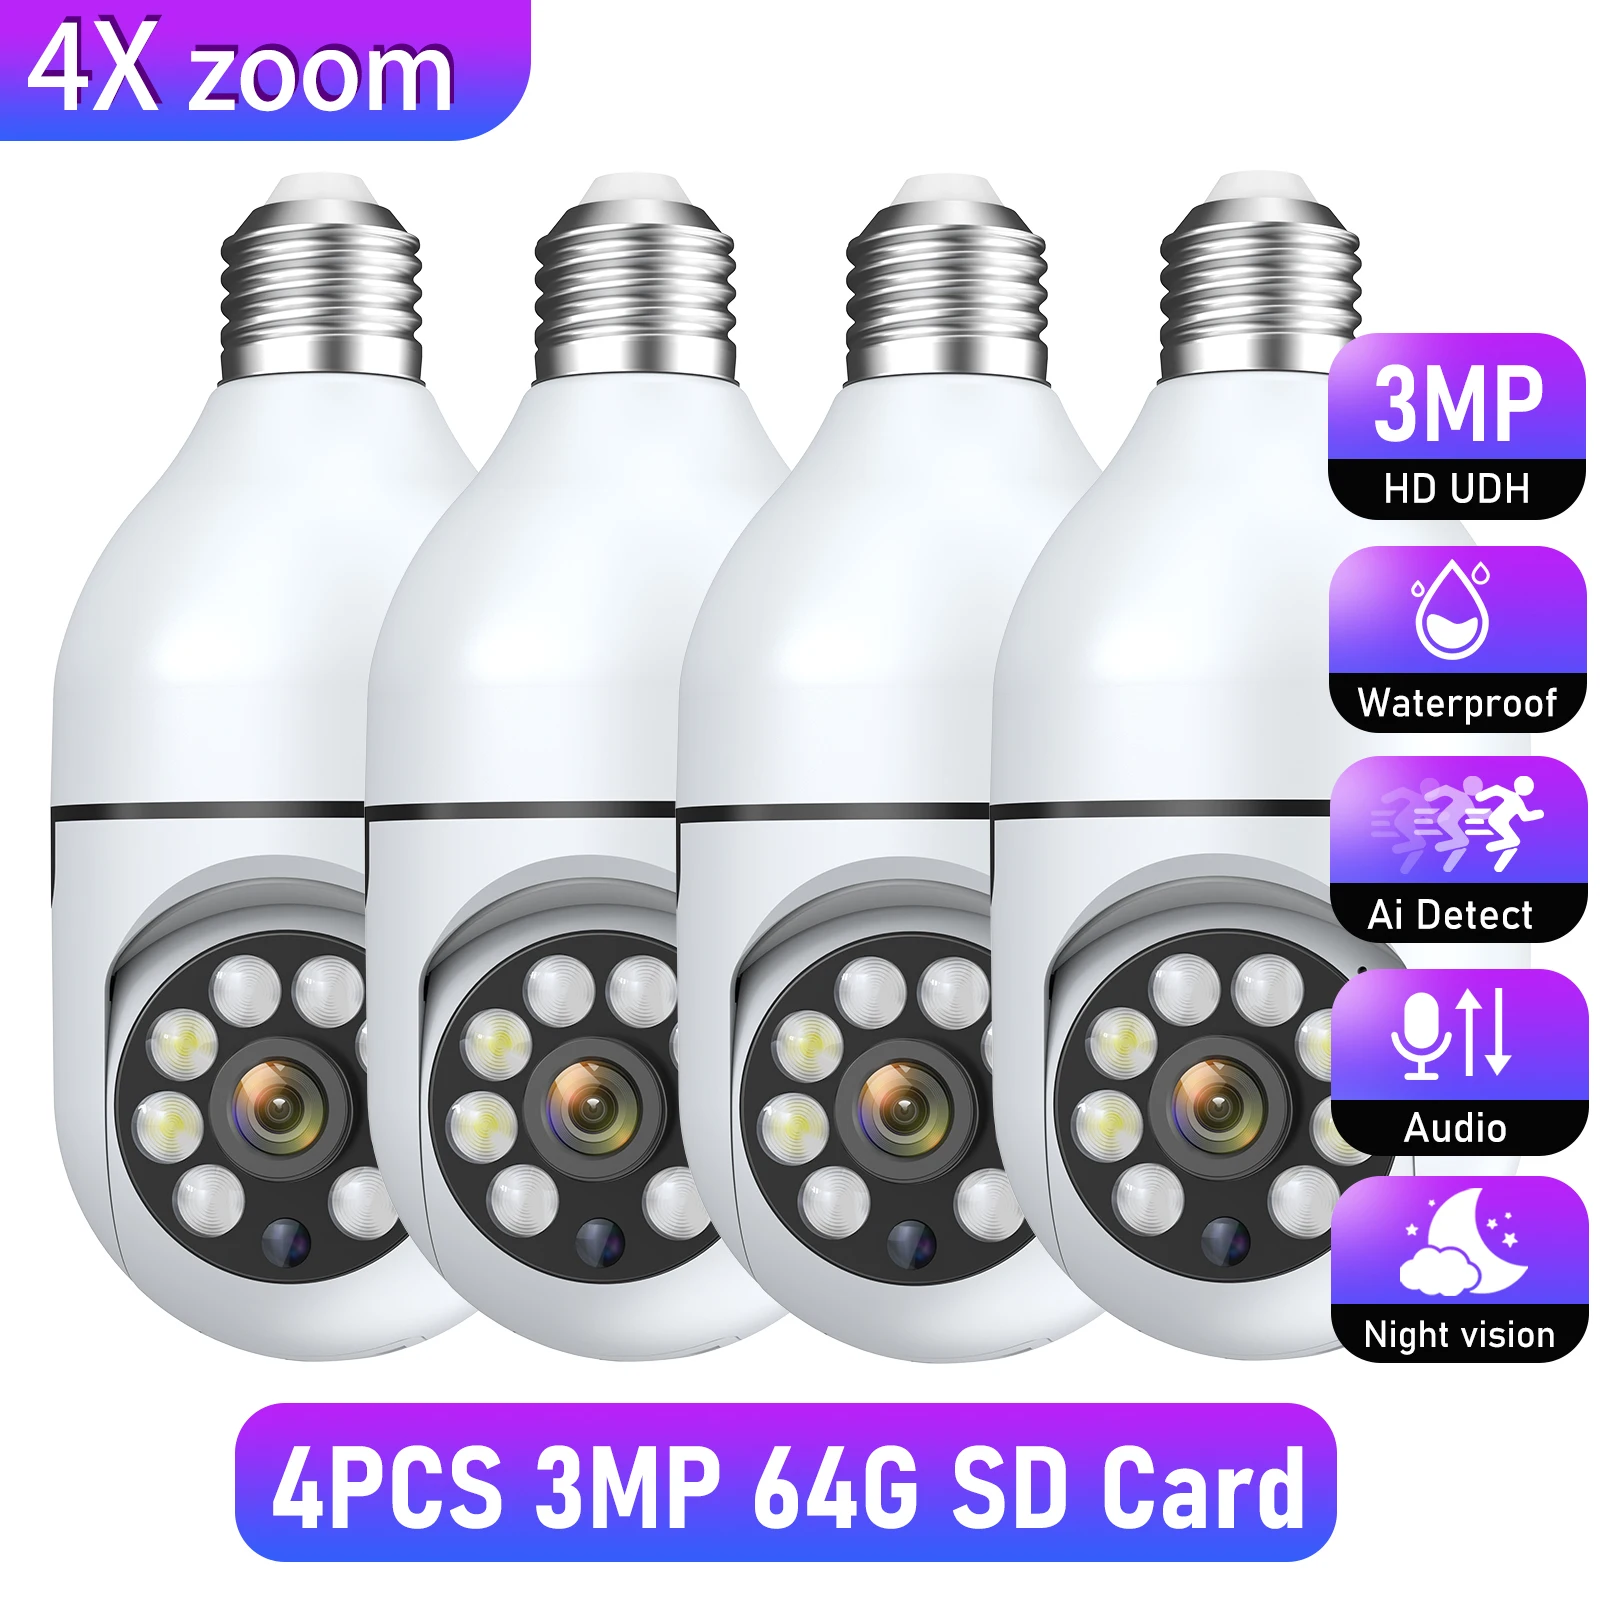 4PCS 3MP 64G SD Card